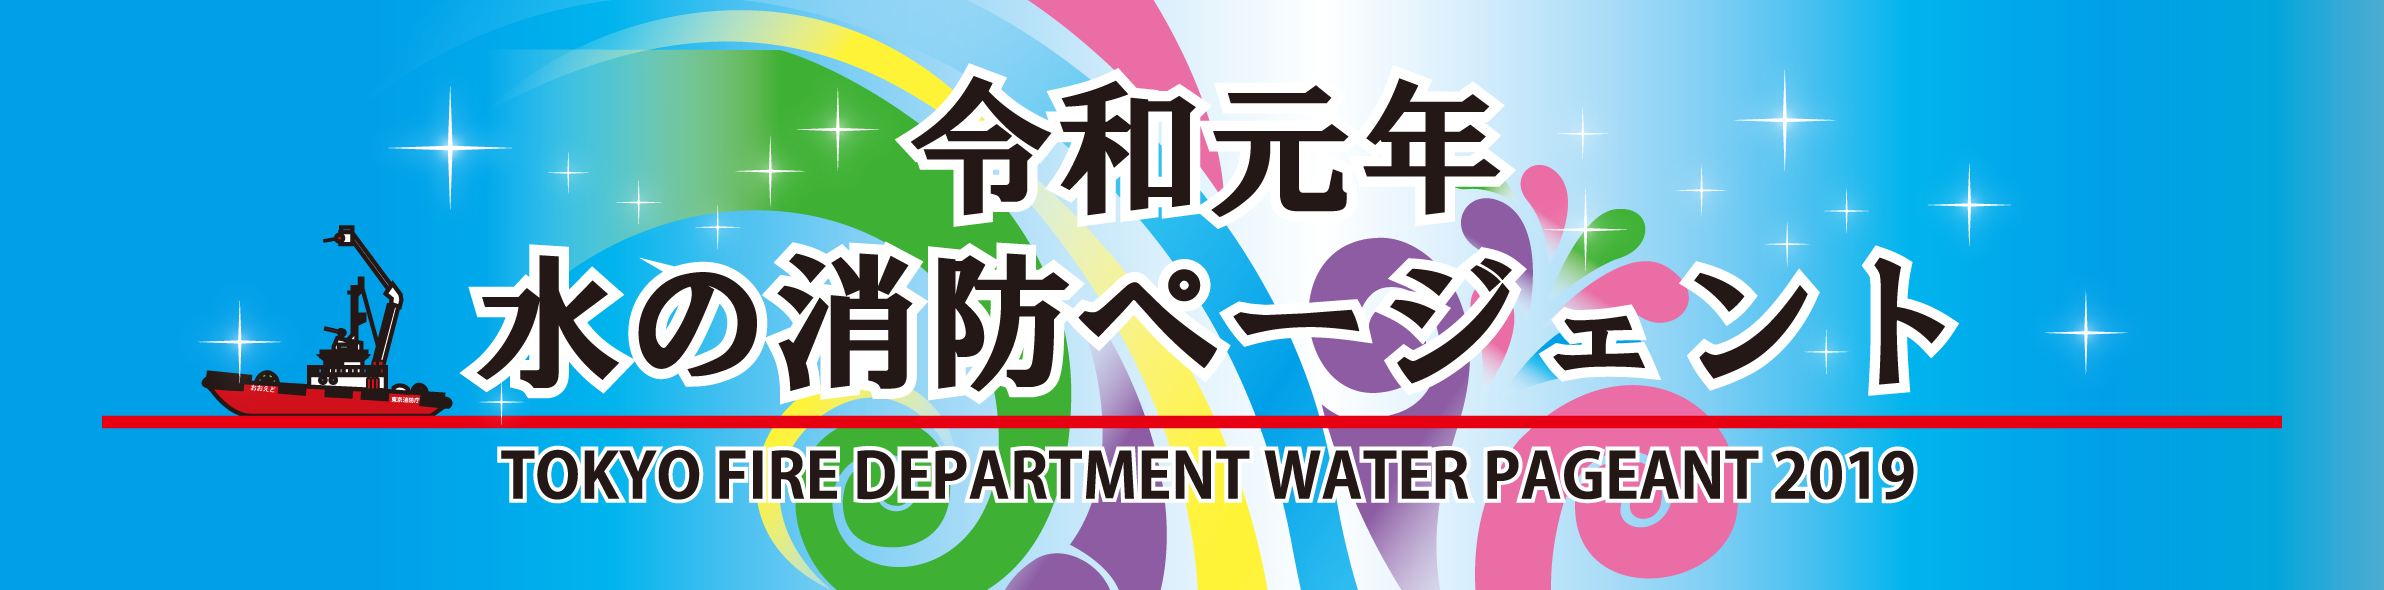 平成30年水の消防ページェント開催のお知らせ